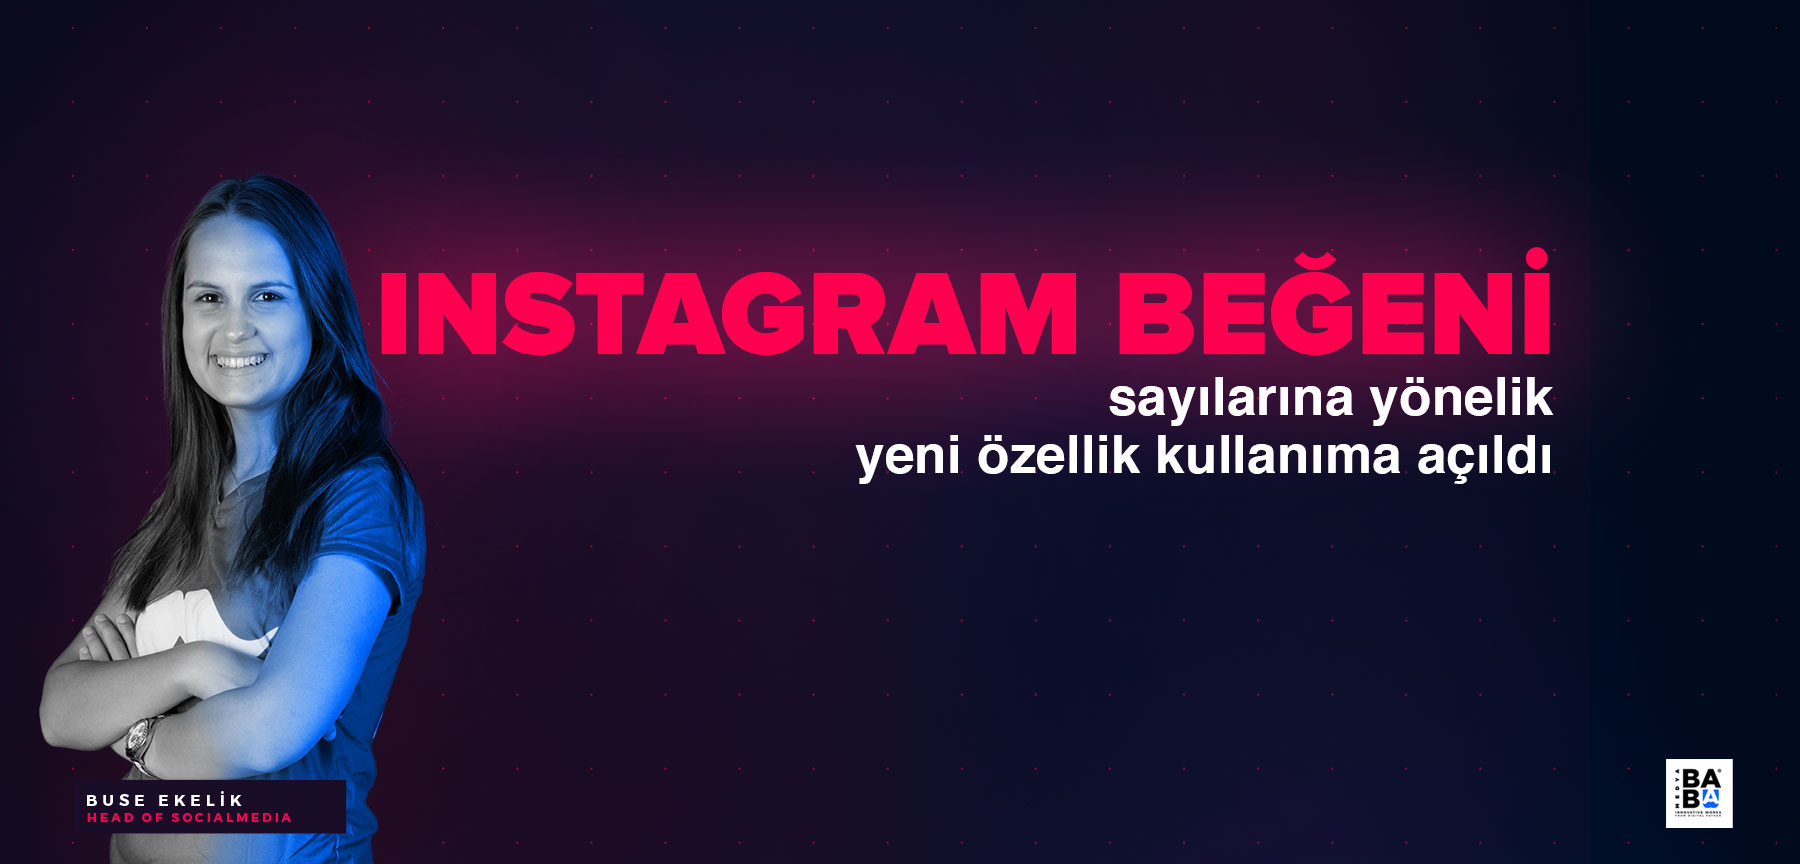 Instagram beğeni sayılarına yönelik yeni özellik kullanıma açıldı